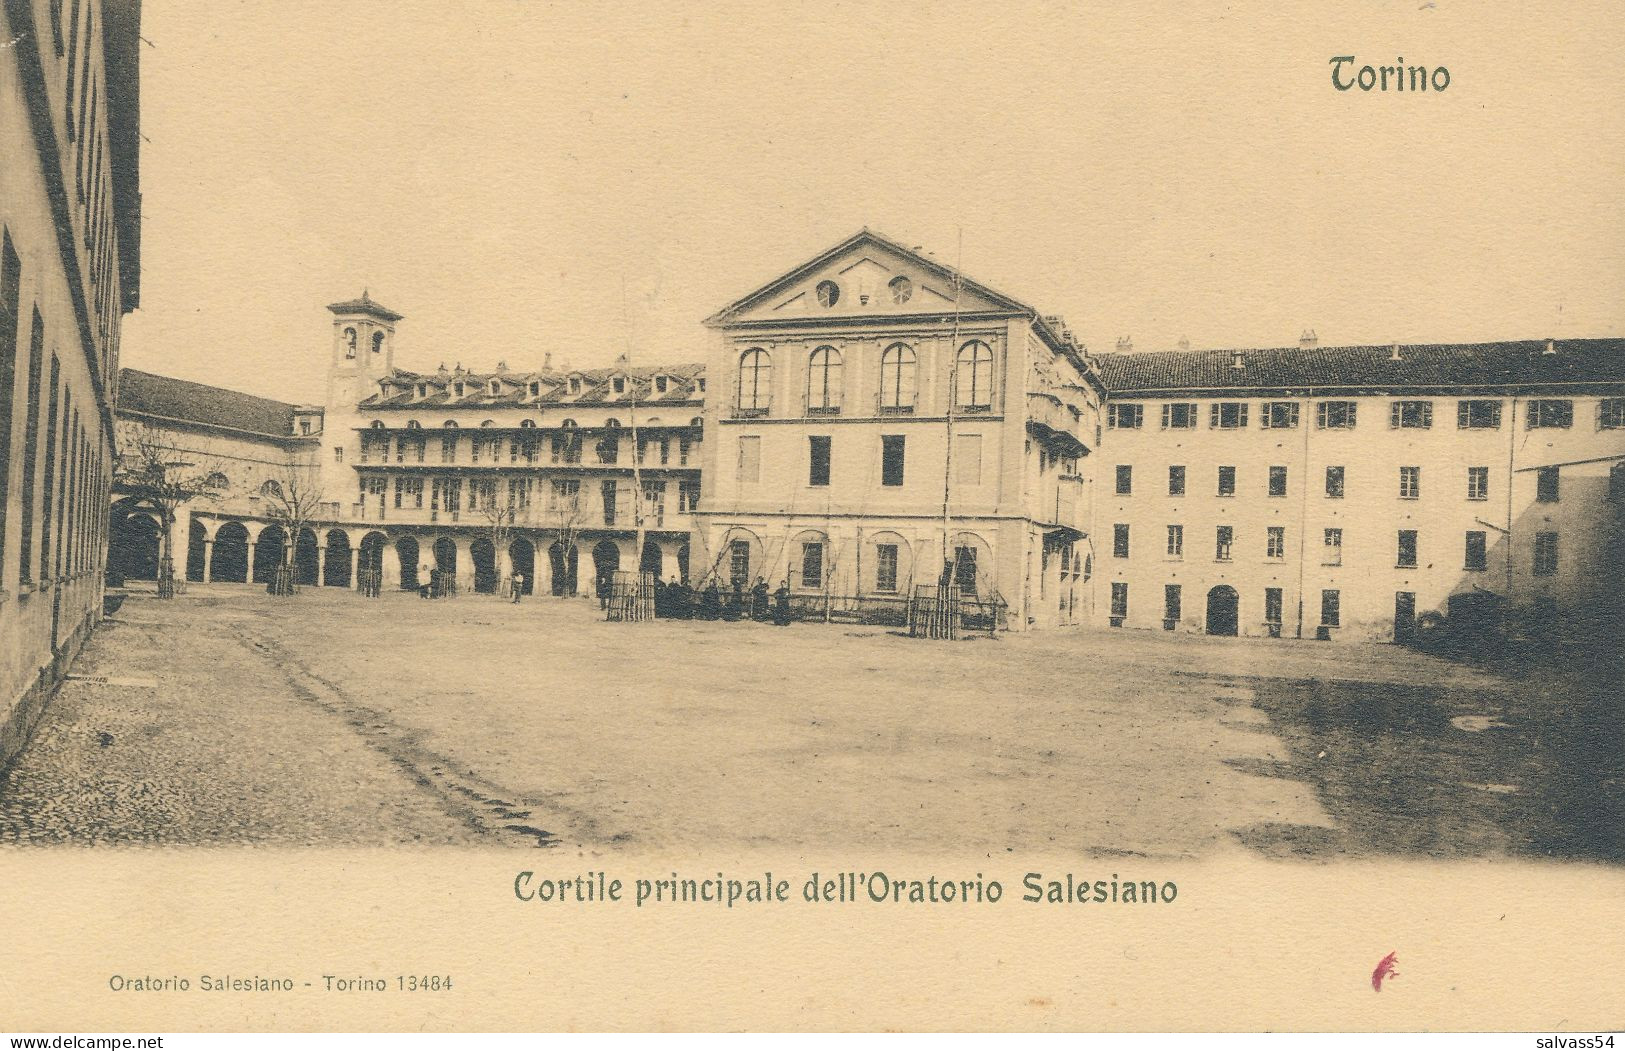 ITALIE - ITALIA - PIEMONTE - TORINO : Cortile Principale Dell'Oratorio Salesiano - Andere Monumente & Gebäude